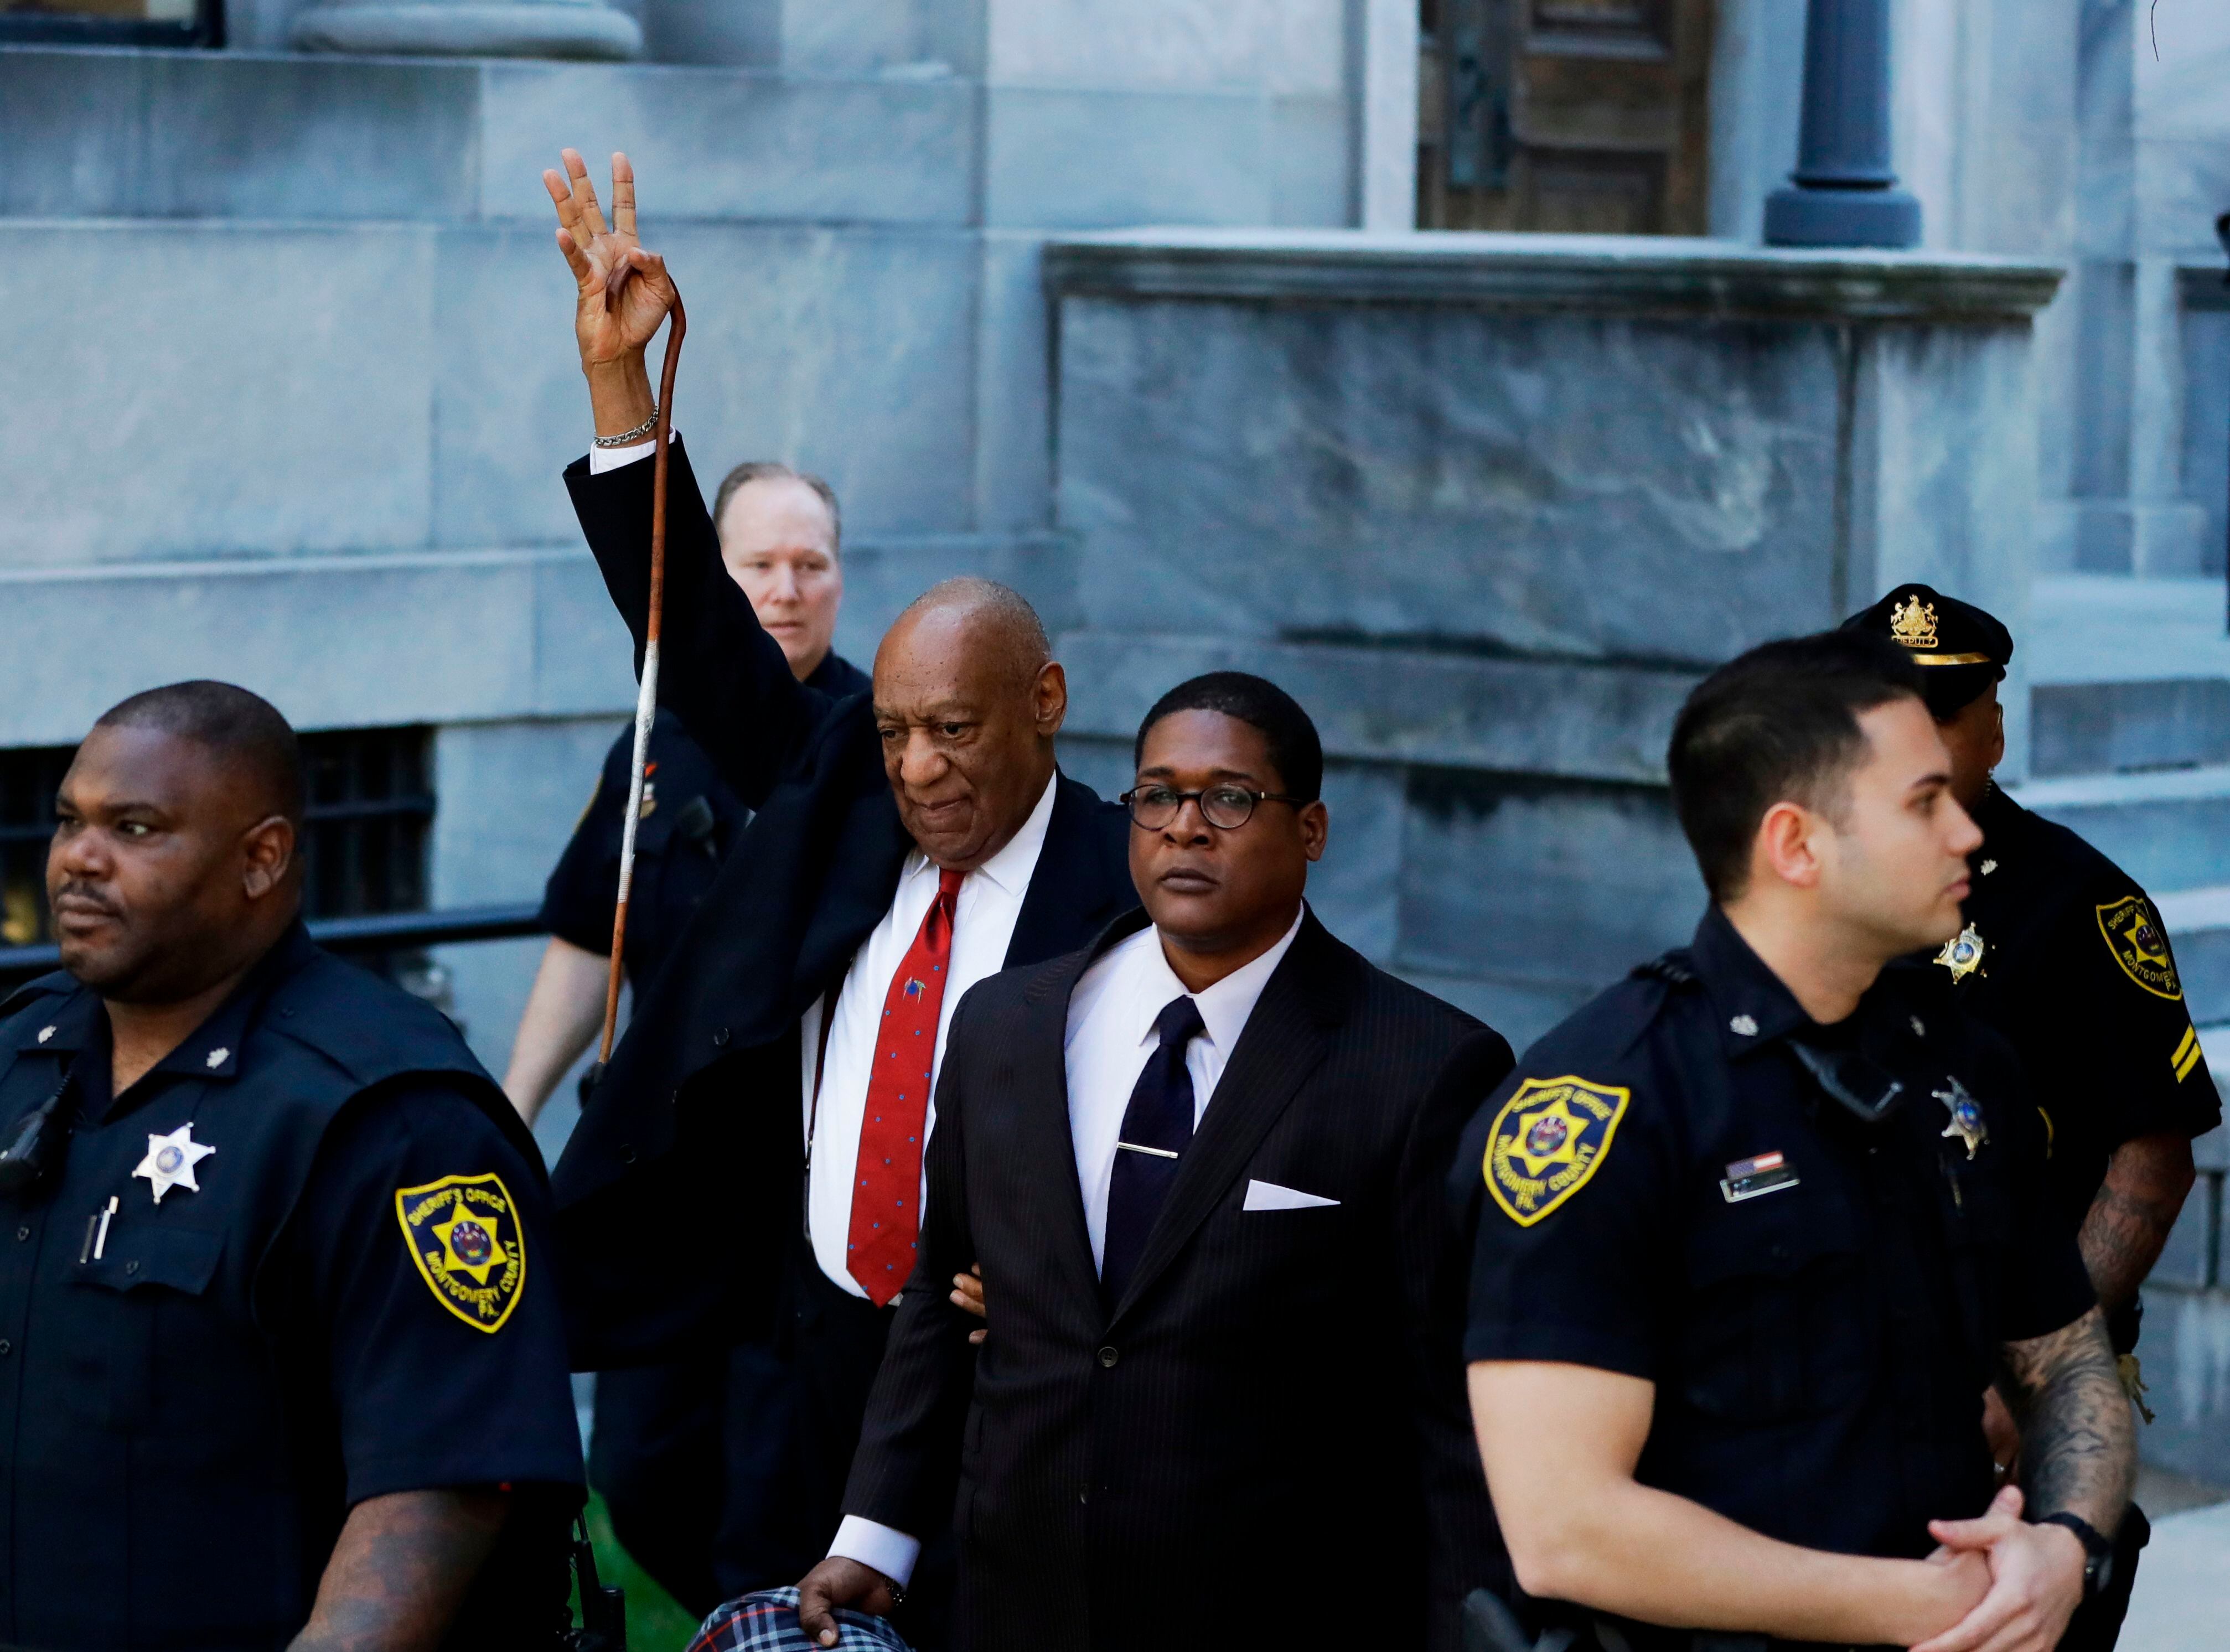 ¿Por qué se anuló la condena de Bill Cosby?